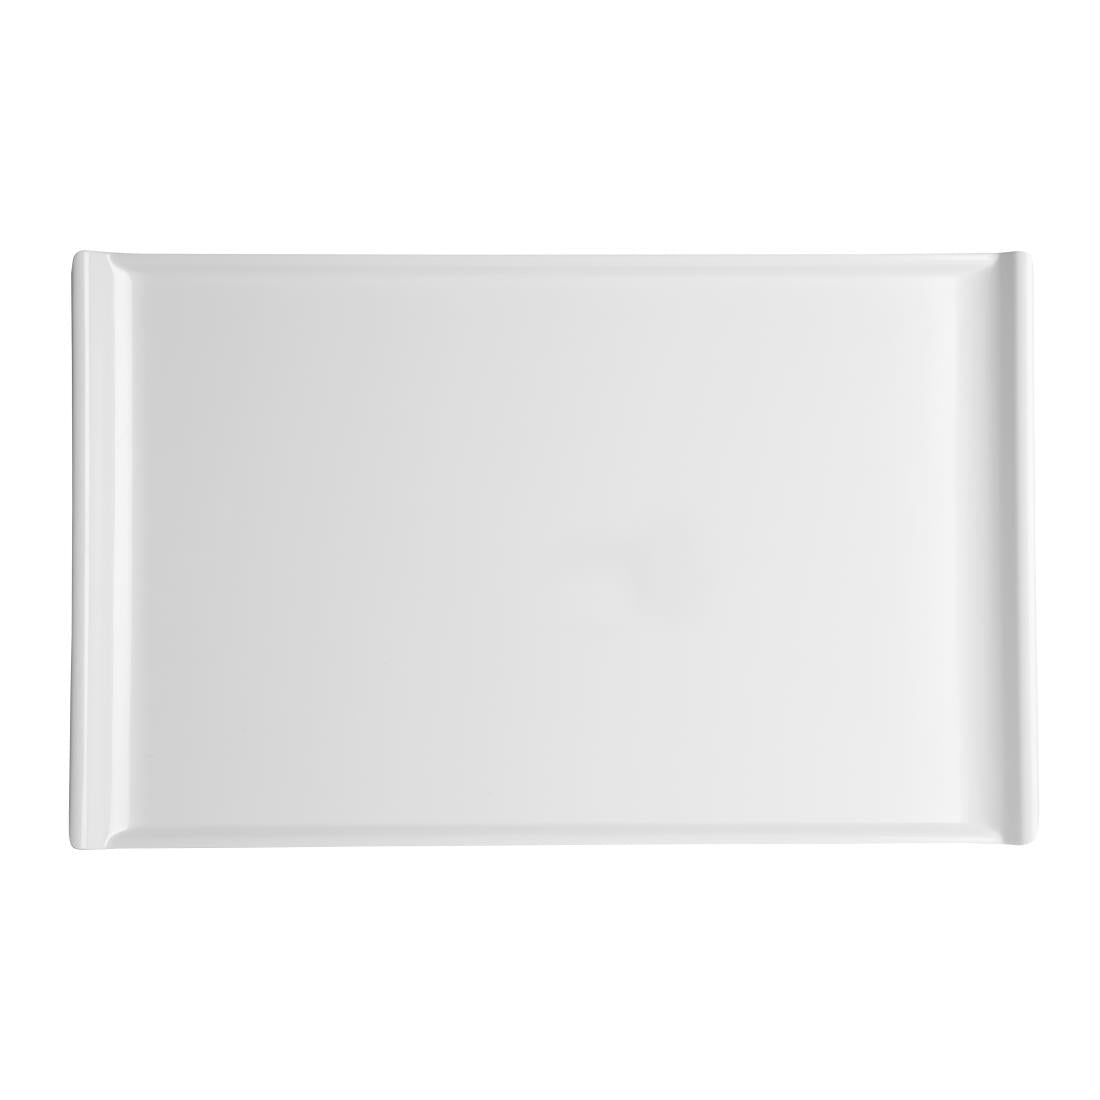 Kristallon Melamine Platter White 530 x 330mm JD Catering Equipment Solutions Ltd